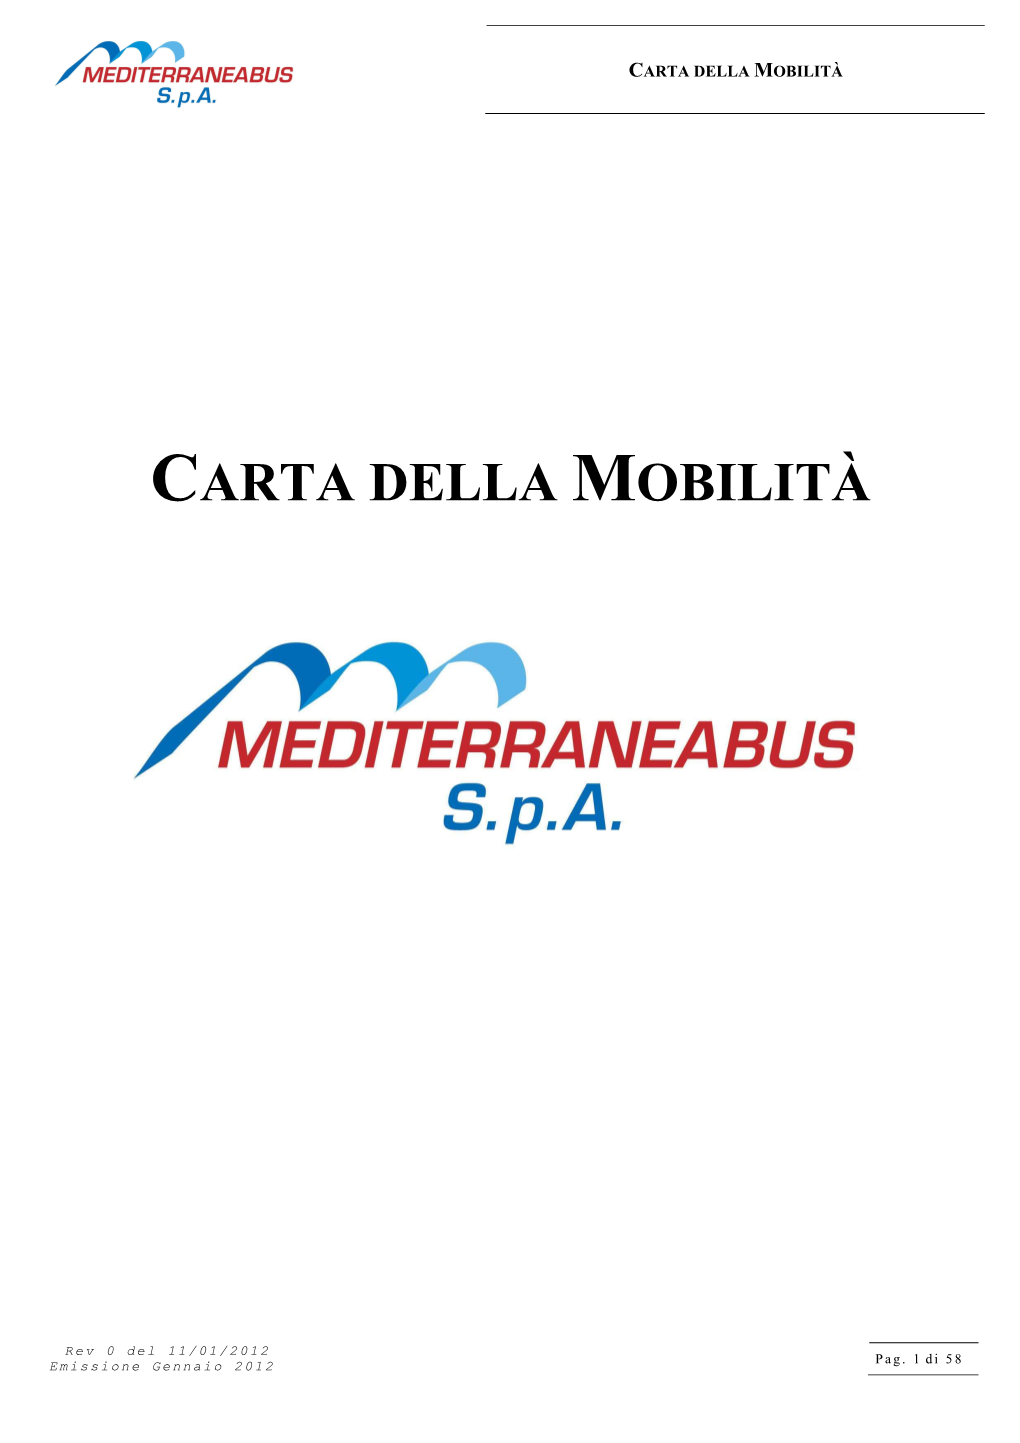 MED Carta Della Mobilità Rev.0